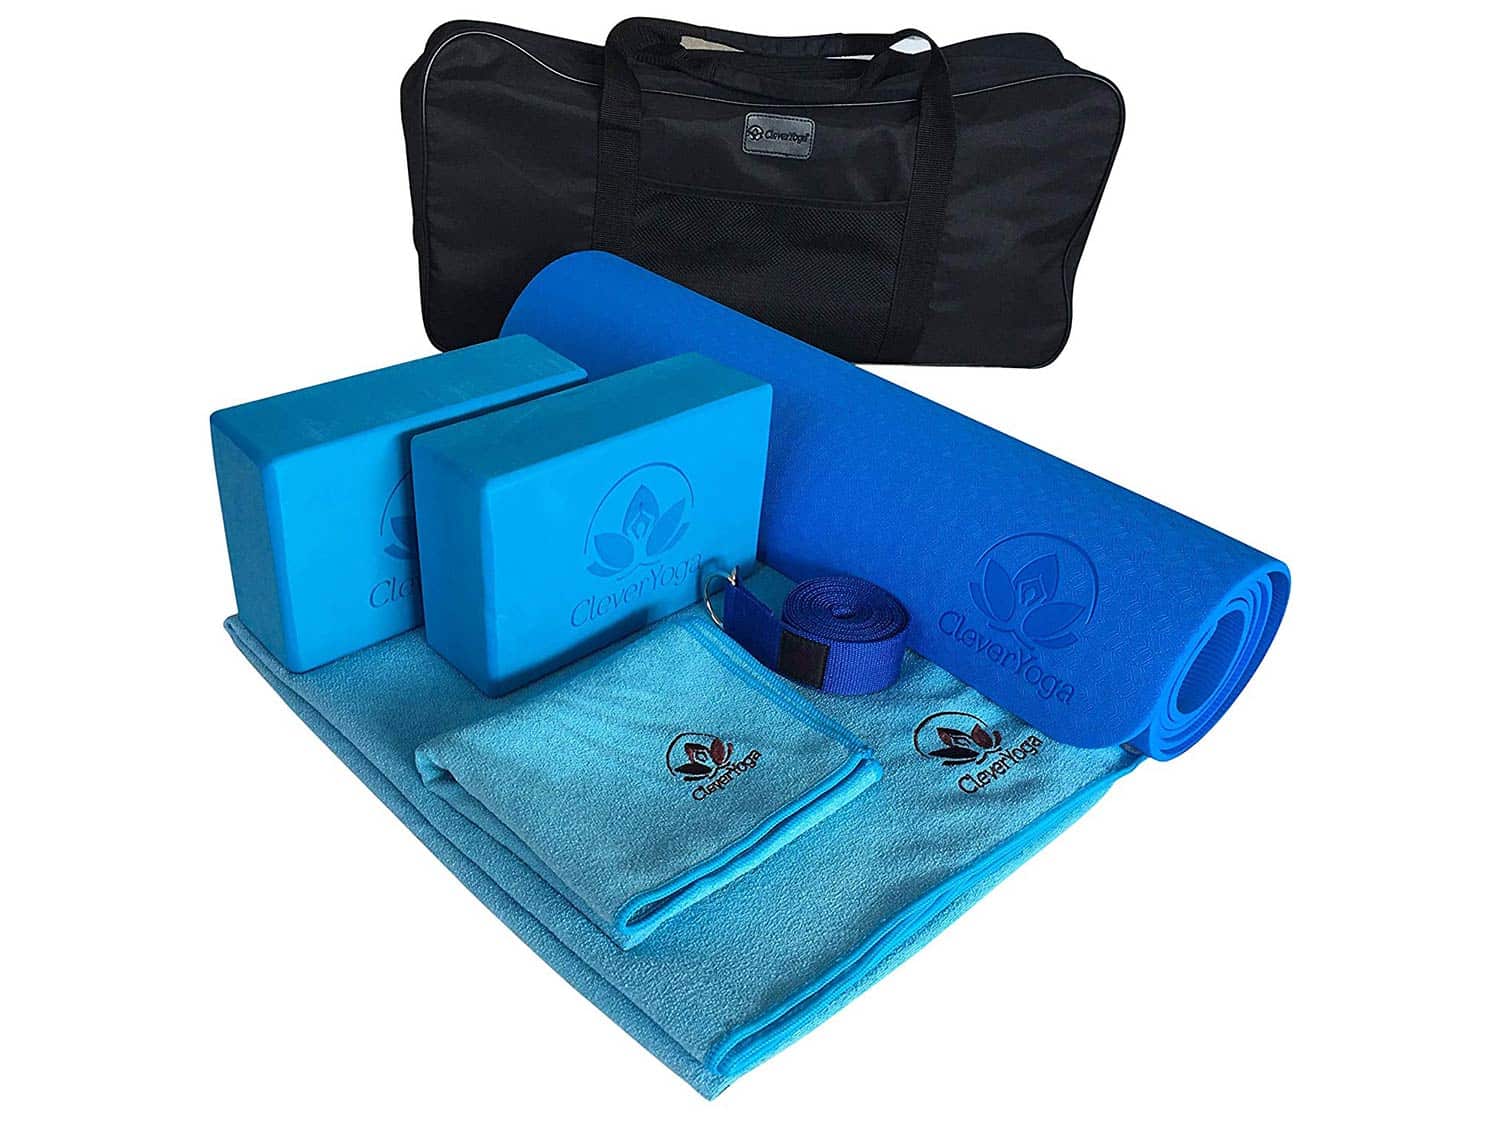 Yoga 7-piece Kit and Bag